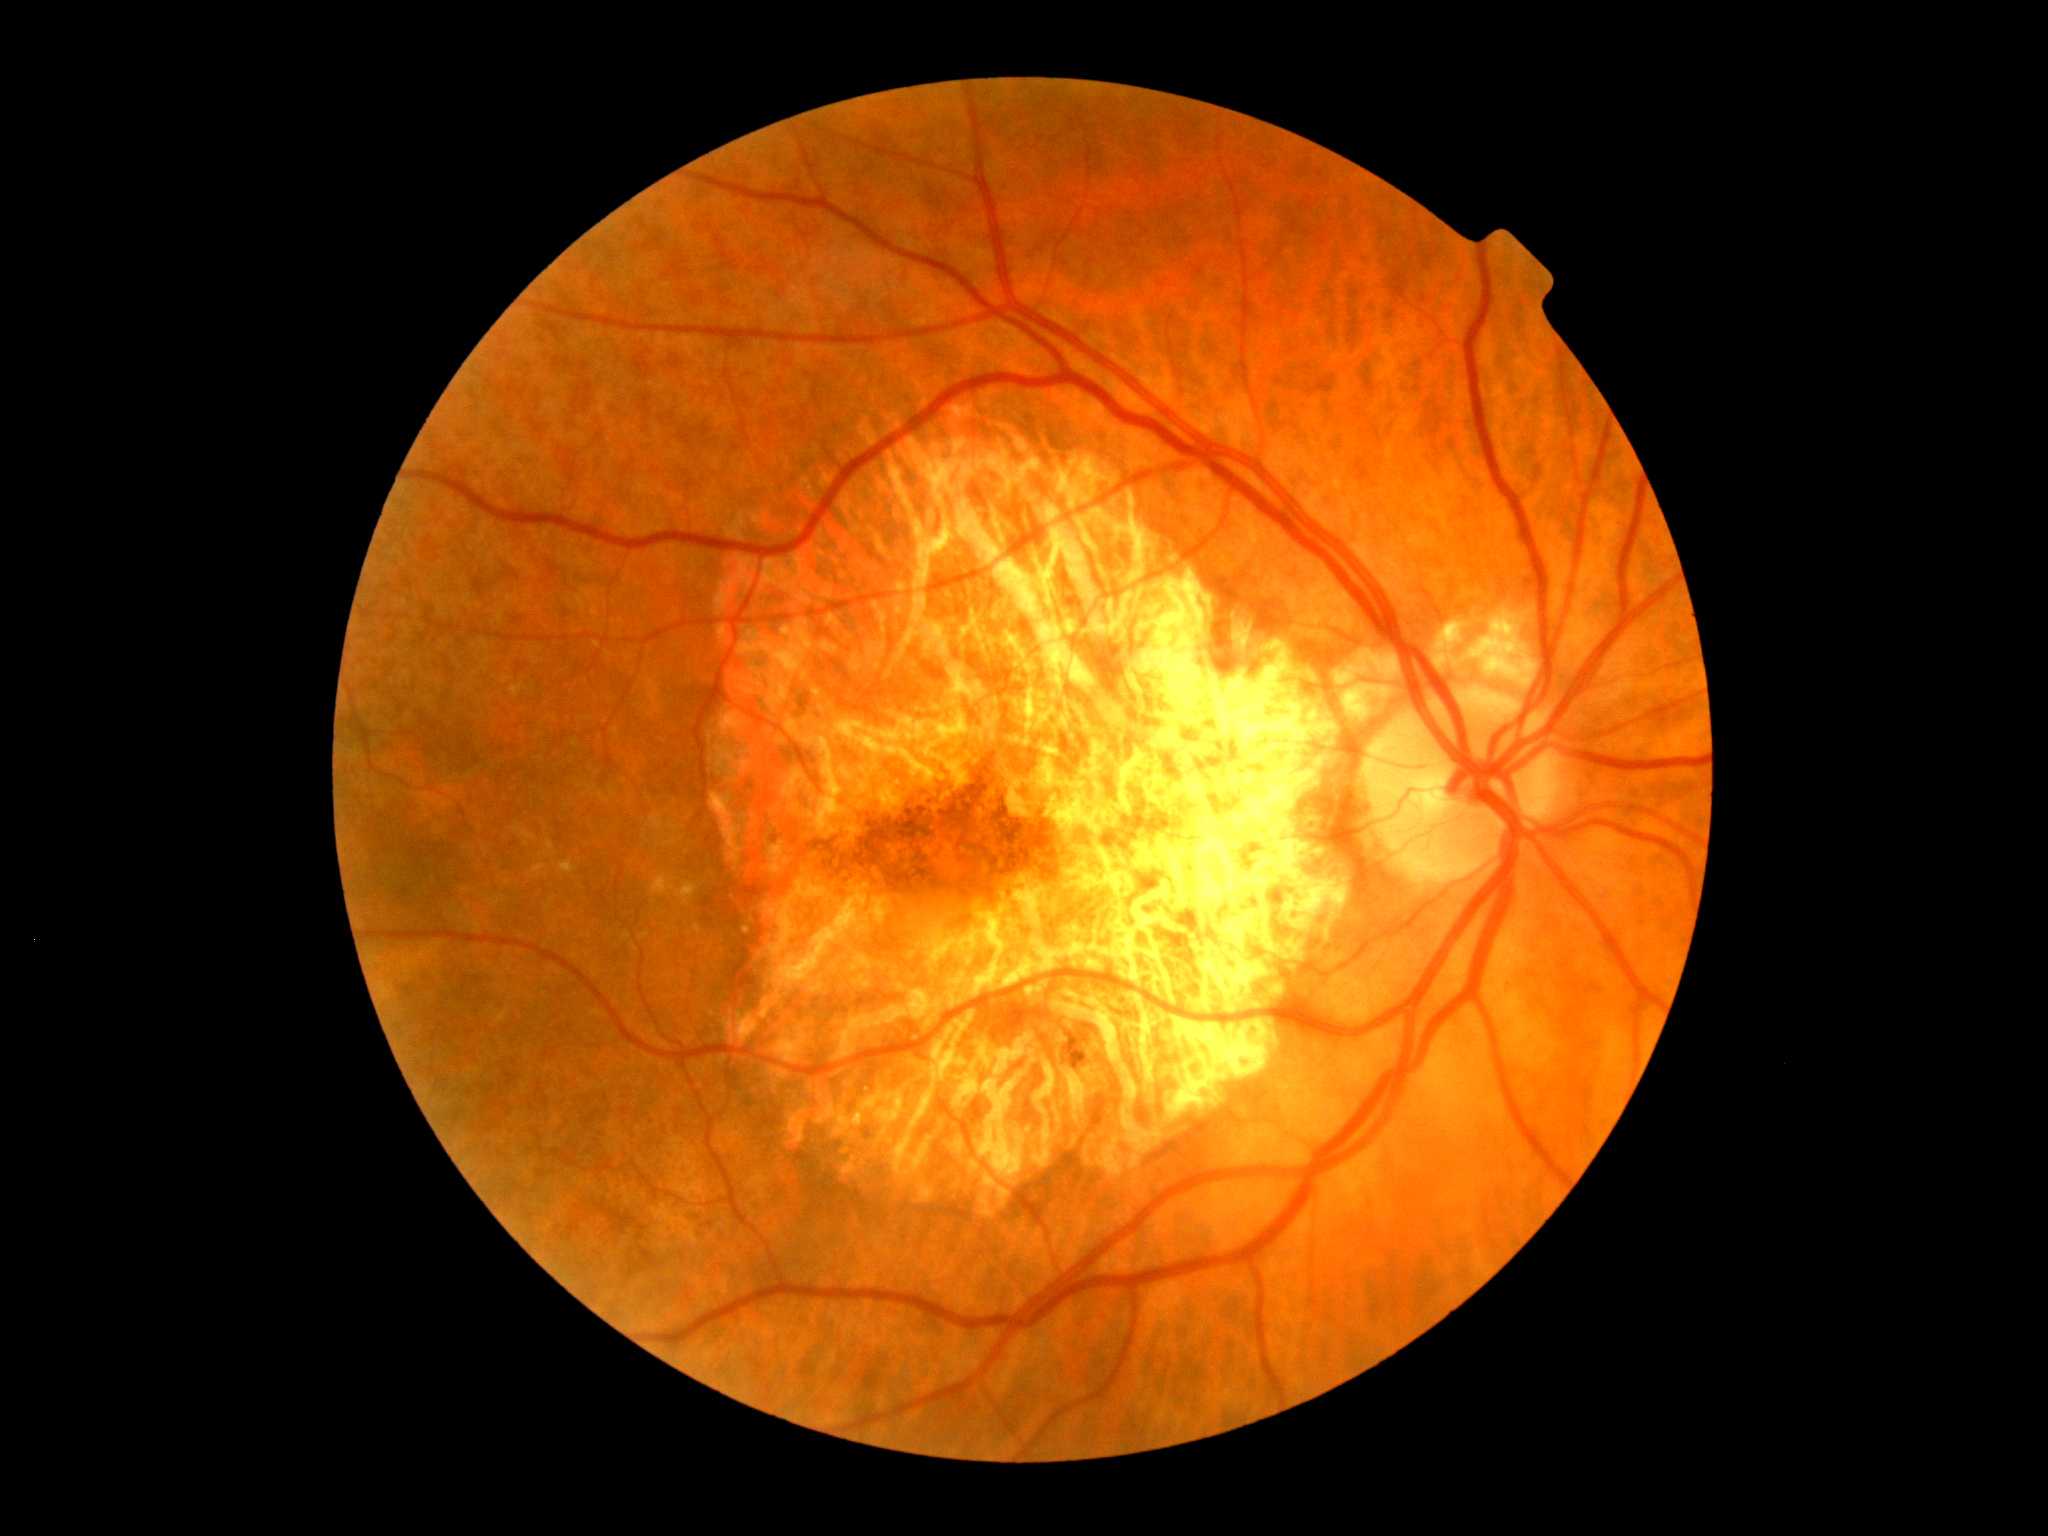 Макулопатия глаза. Макулярная дистрофия сетчатки глаза. Макулодистрофия, макулярная дегенерация; ретинит;. Хориоретинальная дегенерация сетчатки. Возрастная макула дистрофия сетчатки.